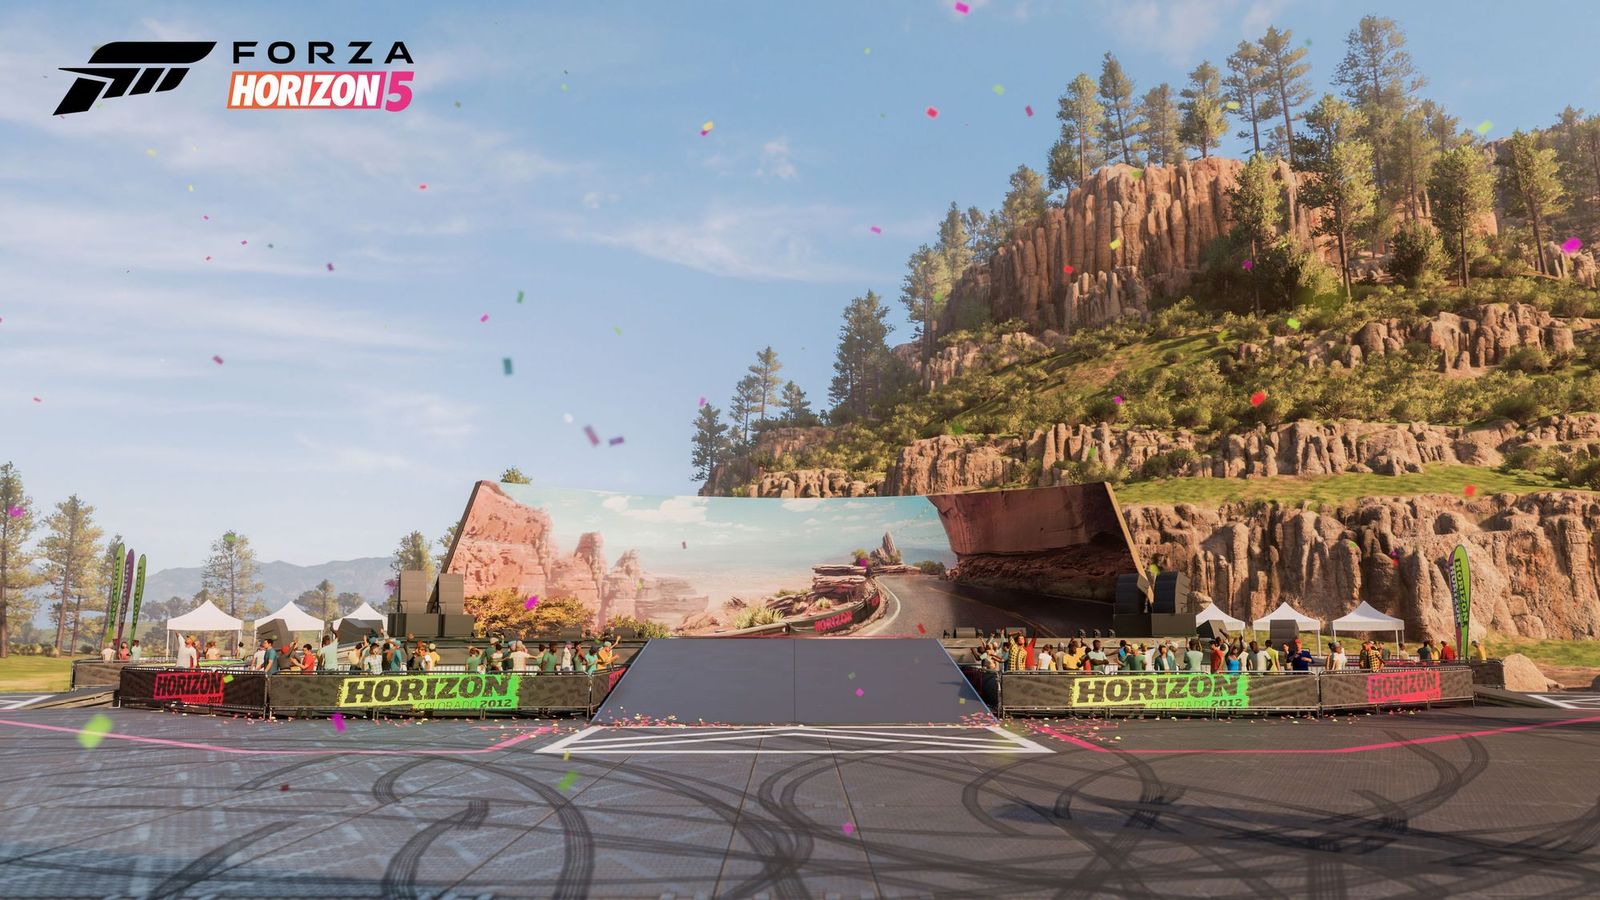 Forza Horizon 5 Horizon 10-year Anniversary Update